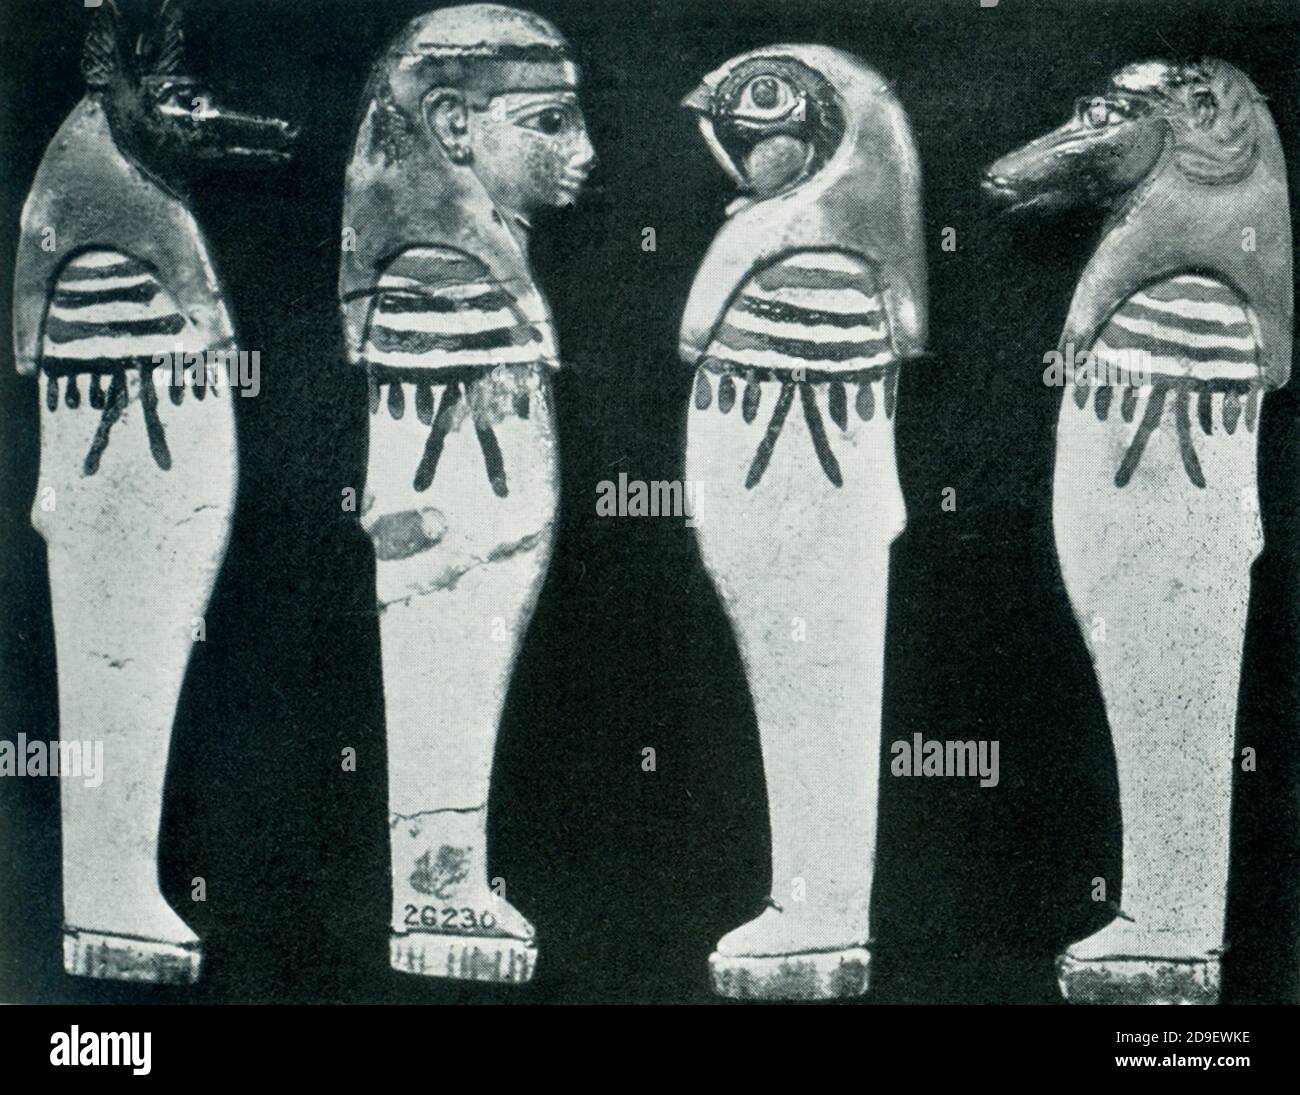 Jarres canopes représentant les quatre fils d'Horus. Un ensemble de quatre bocaux canopes a été un élément important de l'enterrement dans la plupart des périodes de l'histoire de l'Égypte ancienne. Les bocaux à canopes étaient des récipients dans lesquels les organes momifiés séparément seraient placés. Les versions les plus connues de ces bocaux ont des couvercles en forme de têtes de divinités protectrices appelées les quatre fils d'Horus. L'Imsety à tête humaine était le gardien du foie; l'Hapy à tête de babouin s'occupait des poumons; le Duamutef à tête de chacal était responsable de l'estomac; et le Qebehsenuef à tête de faucon s'occupait des intestins. Banque D'Images